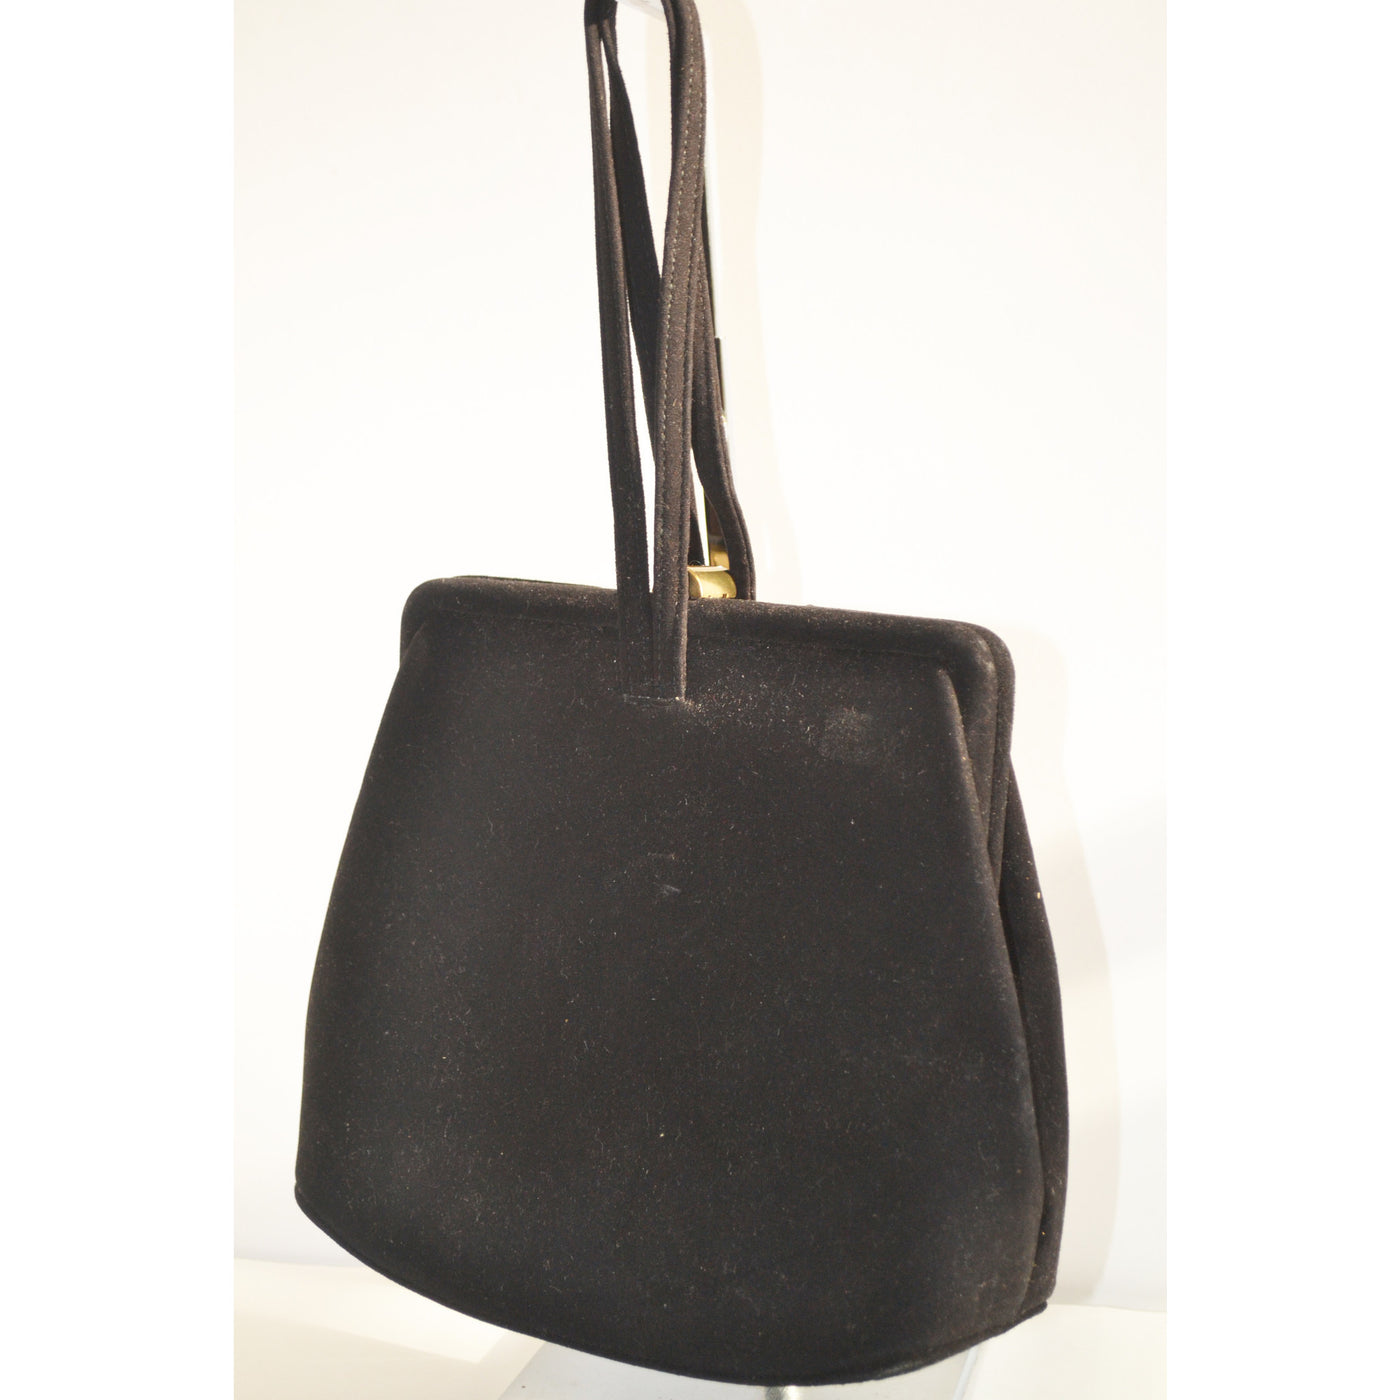 Black Handbag by Renard Paris, Vintage 1950s